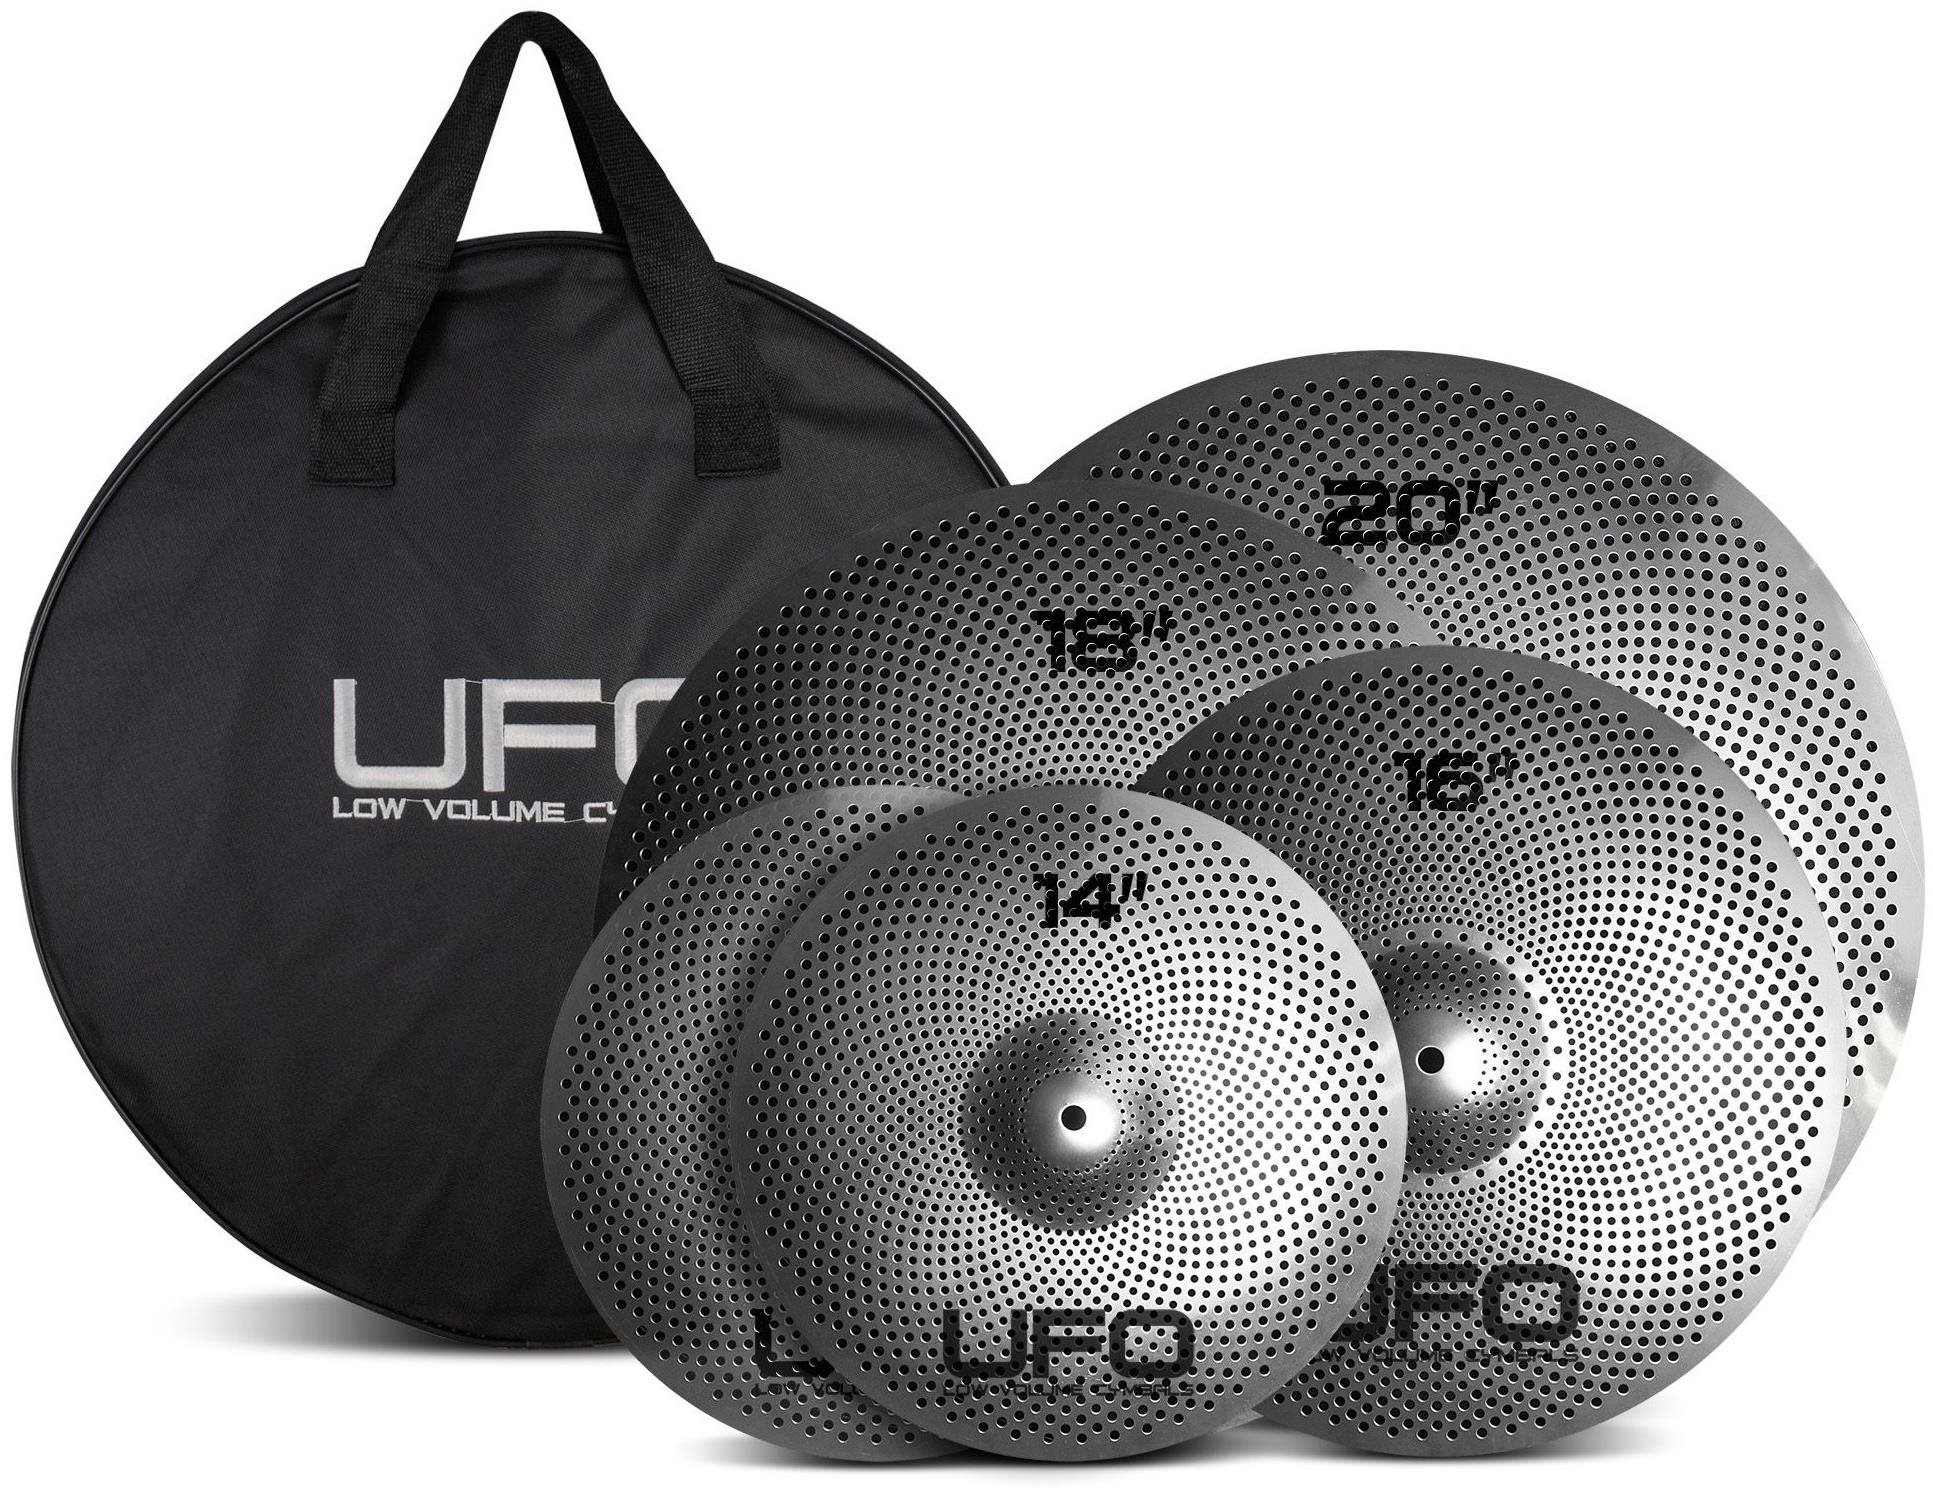 Cintányér UFO Cymbal Set XL